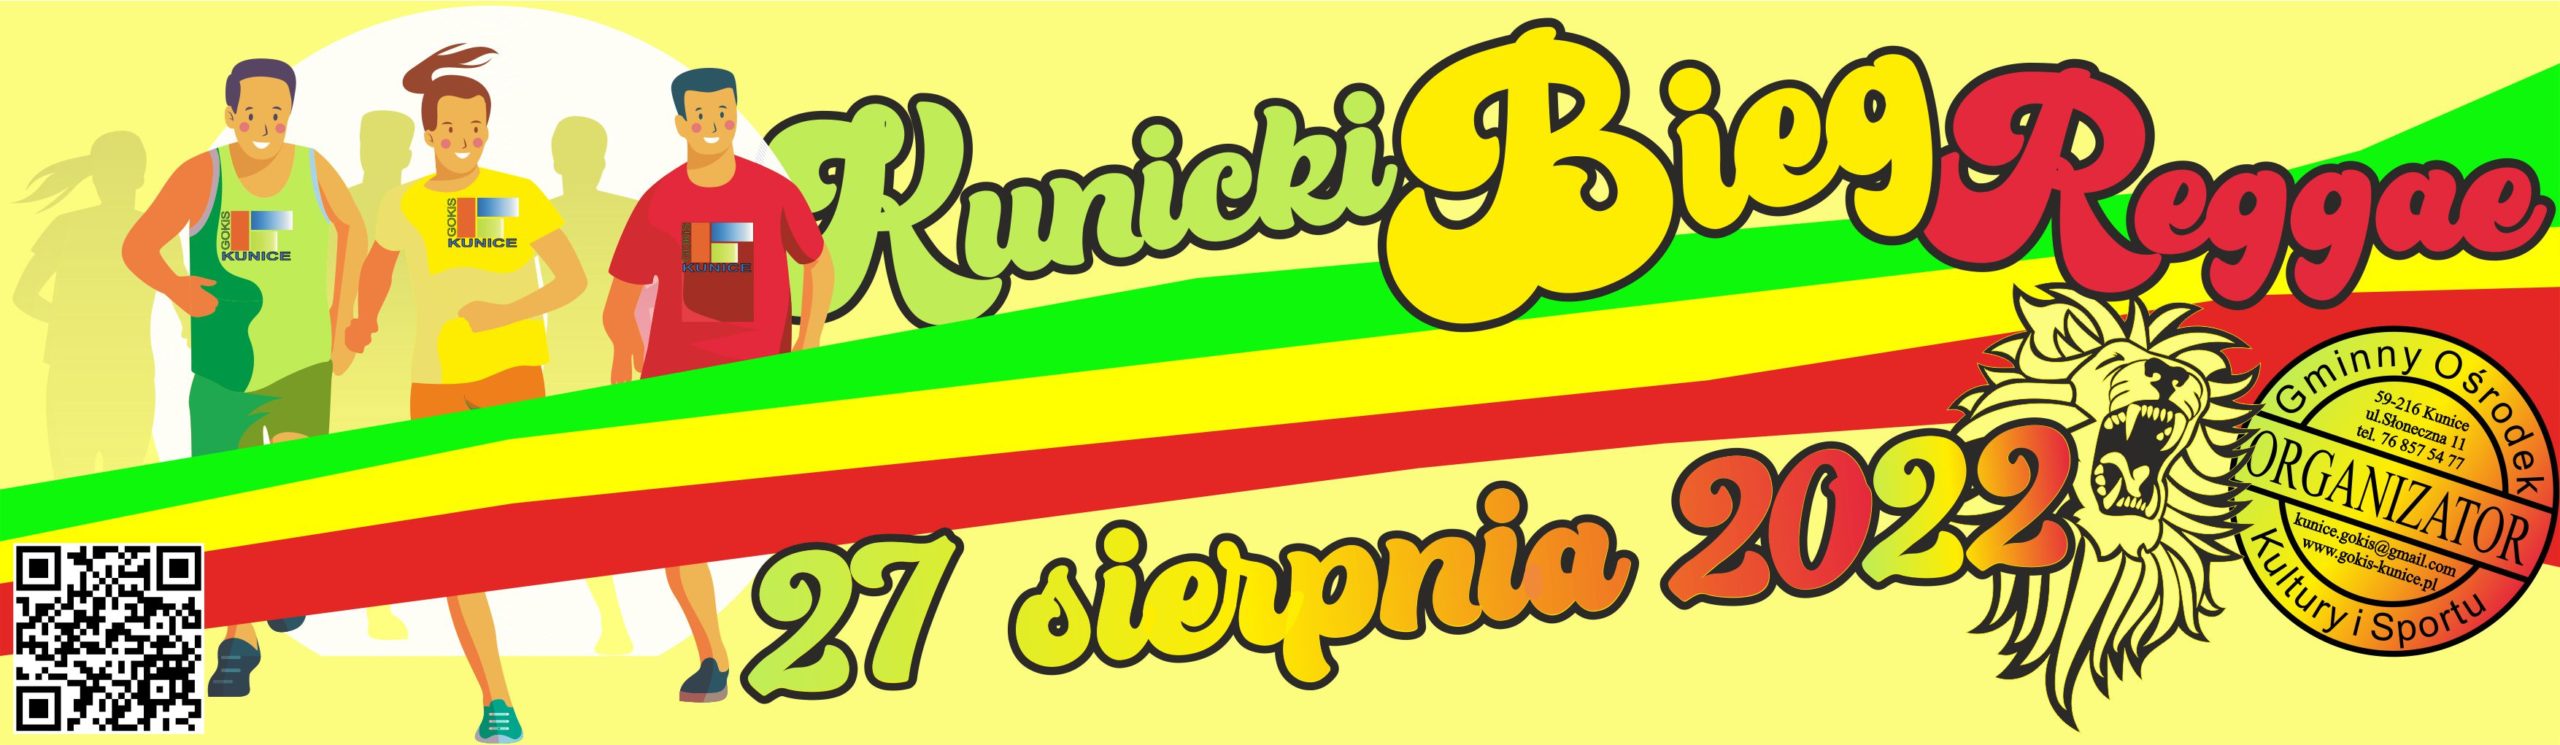 http://www.gokis-kunice.pl/2022/02/23/rozpoczely-sie-zapisy-na-kunicki-bieg-reggae-2022/